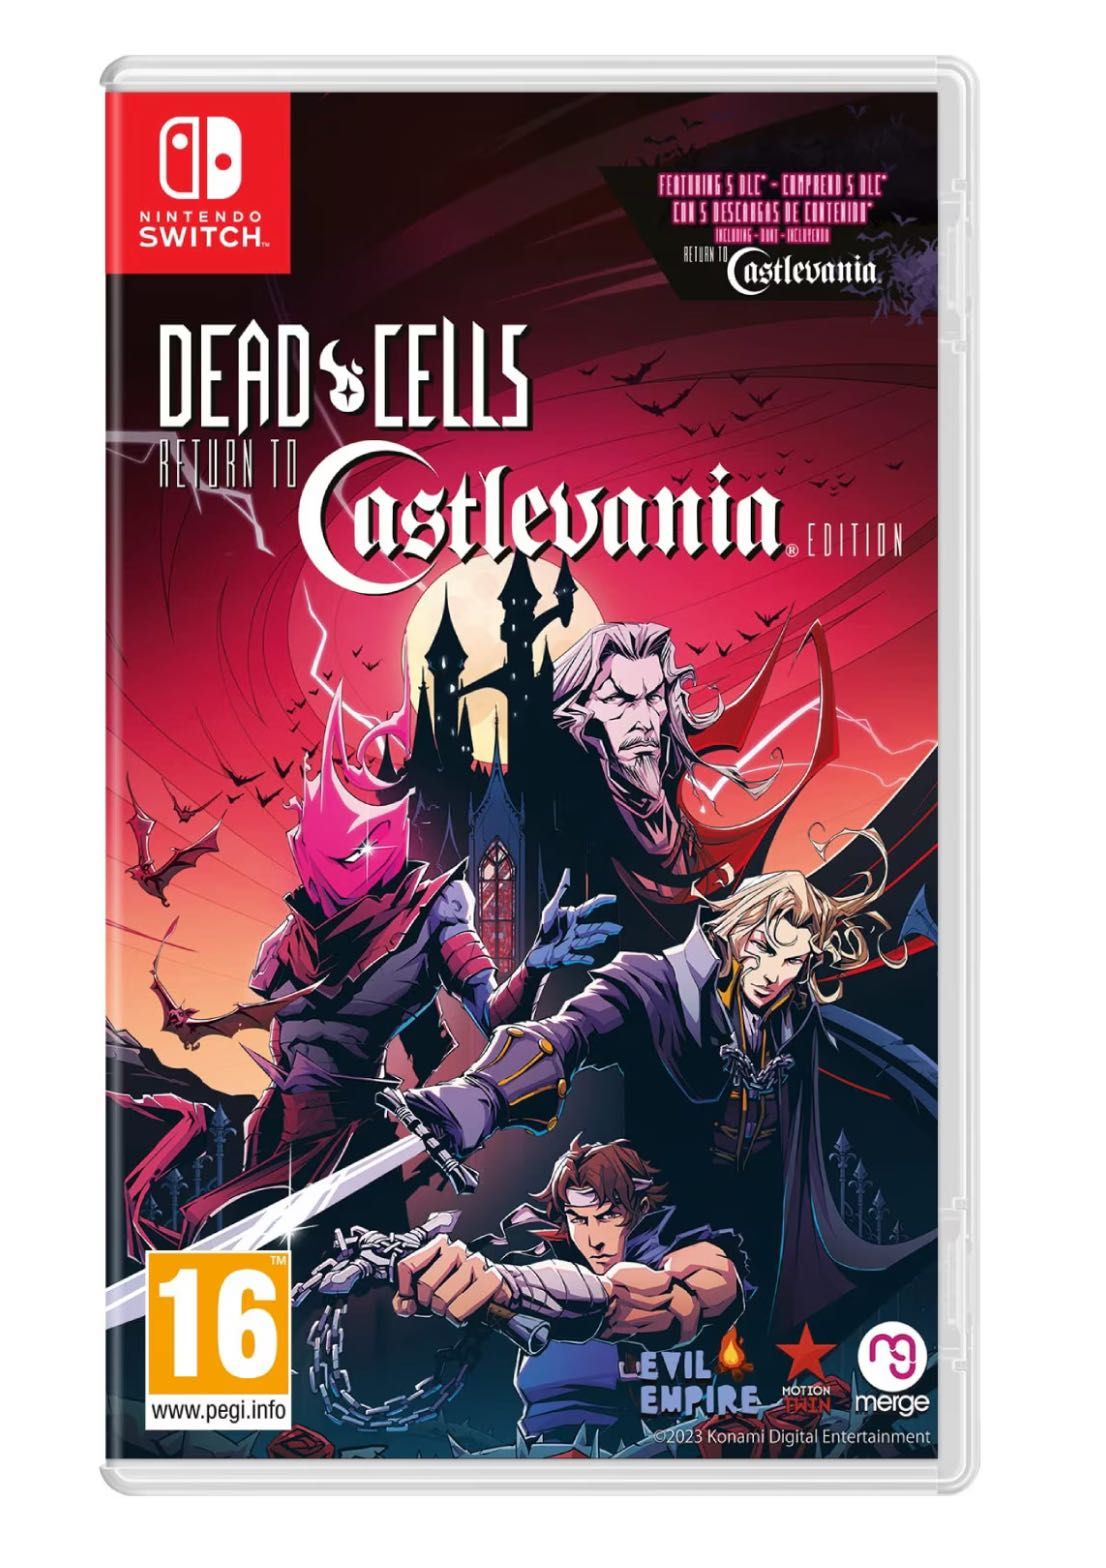 Dead Cells Return To Castlevania Edition pentru nintendo switch